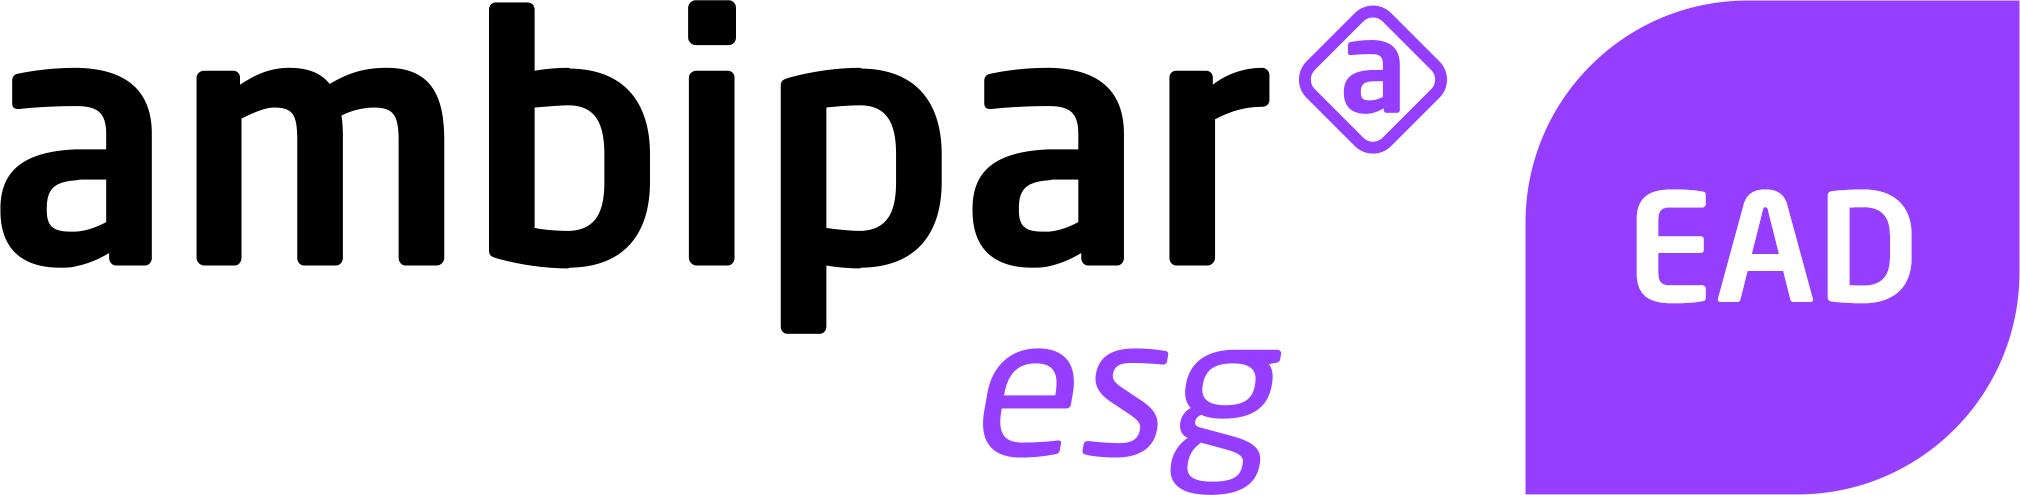 Logo ead esg